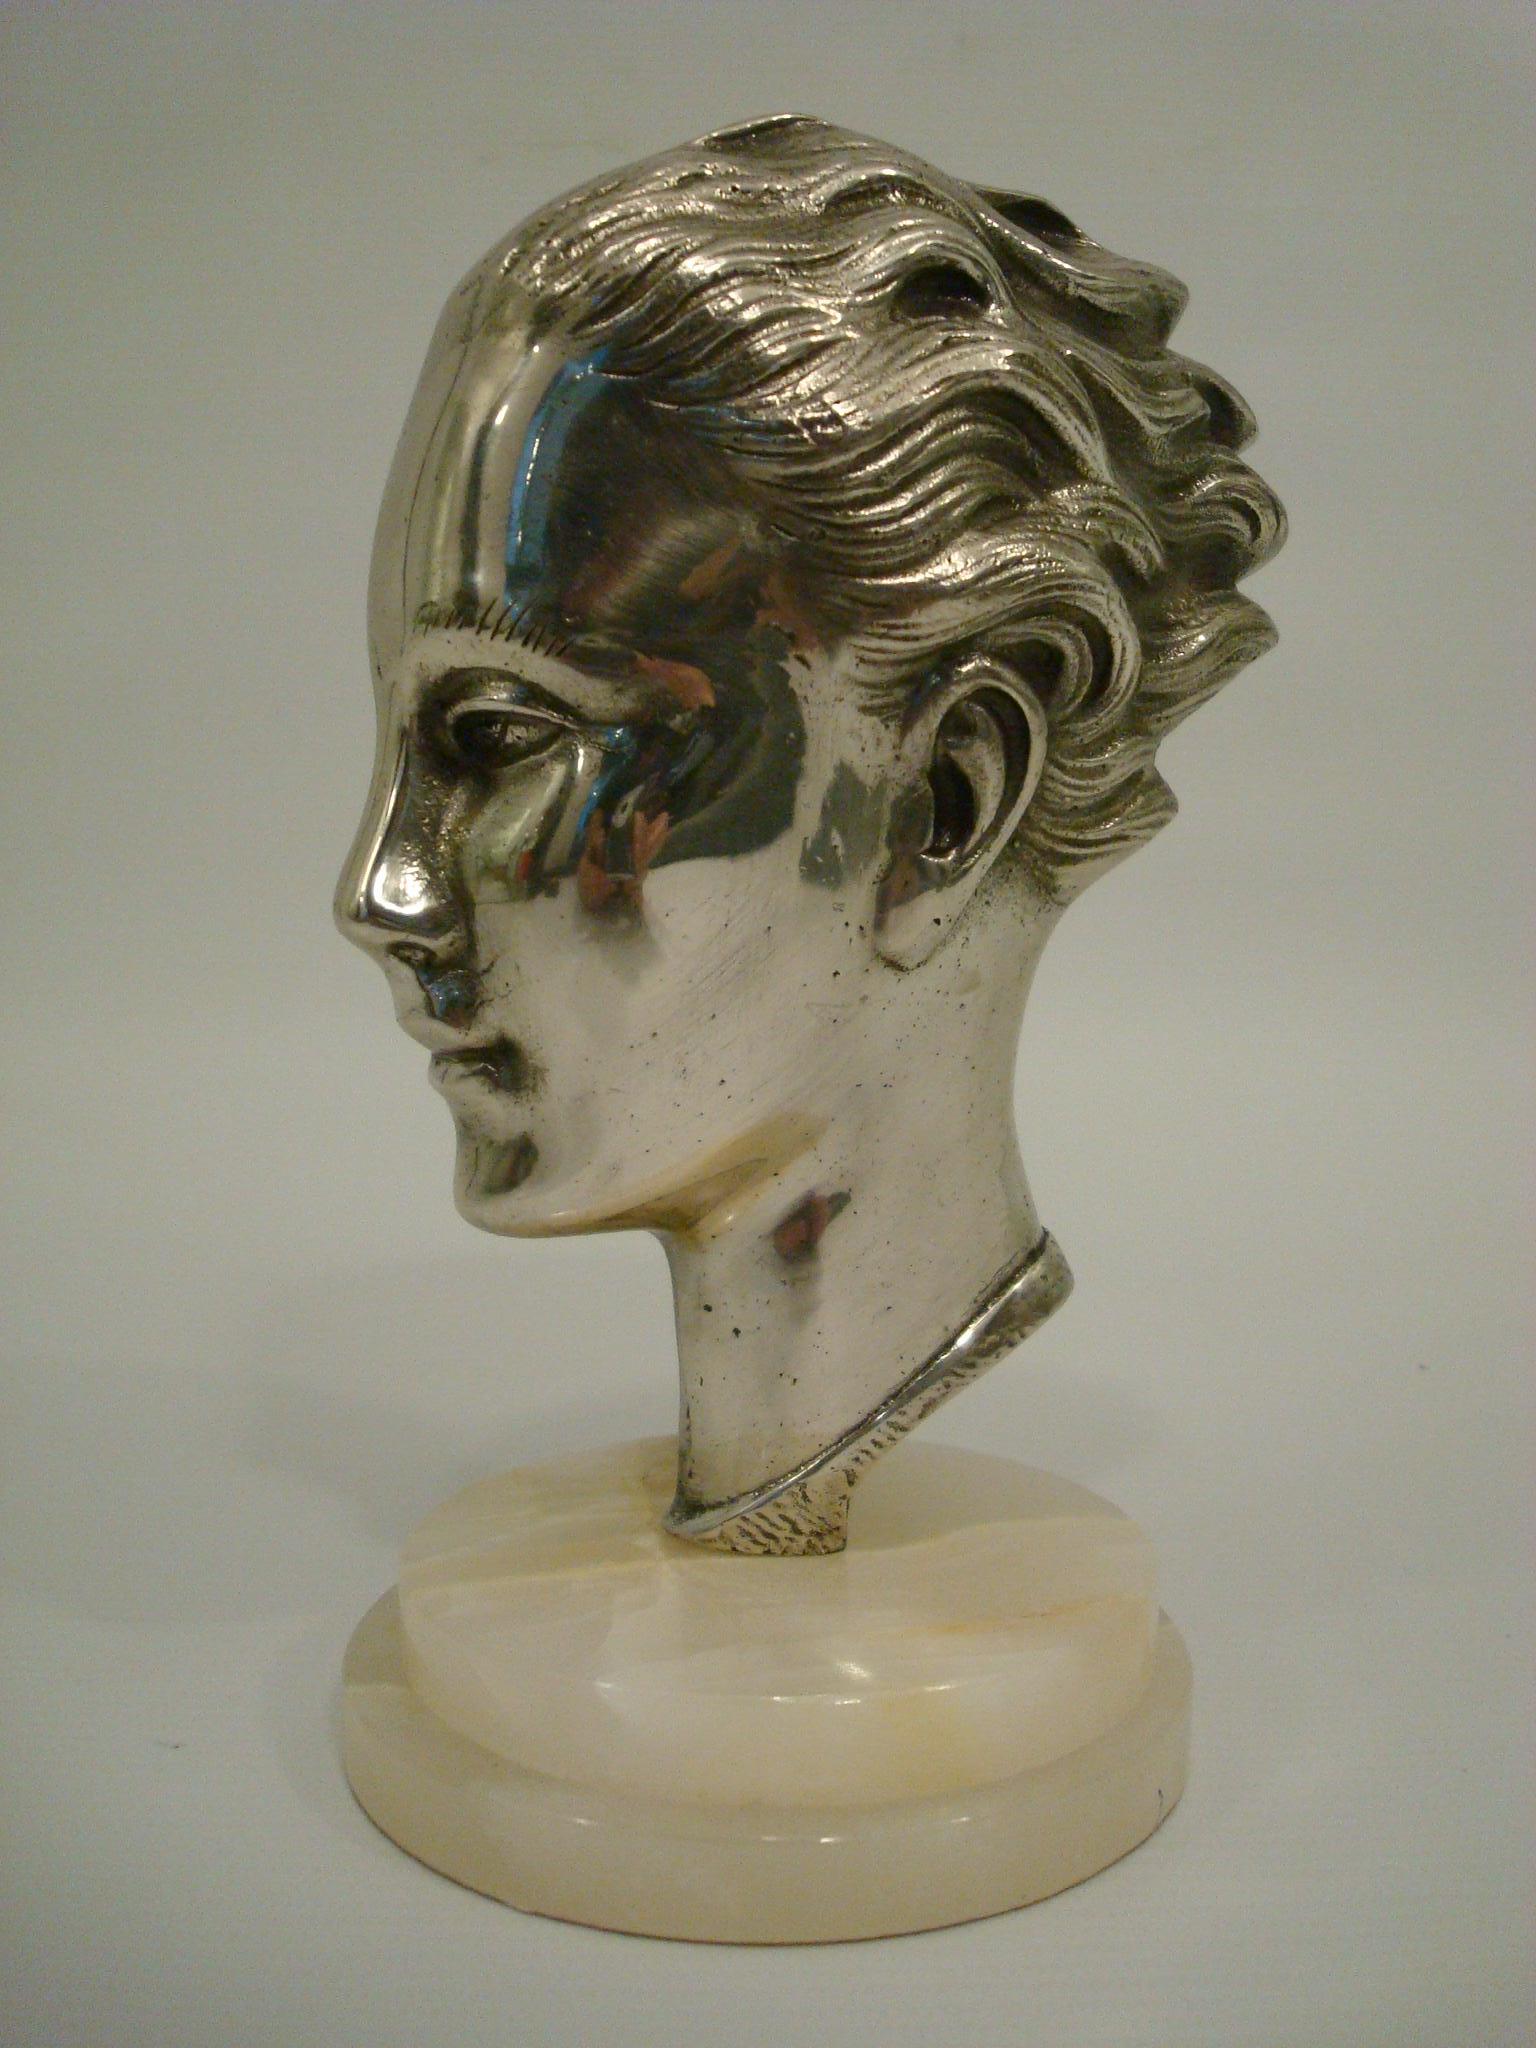 Buste en bronze argenté Art Déco / Midcentury - France 1930's.
Tête en bronze argenté montée sur marbre onyx.
Très belle sculpture, parfaite pour un bureau ou une table d'appoint. Peut être utilisé comme presse-papier.
